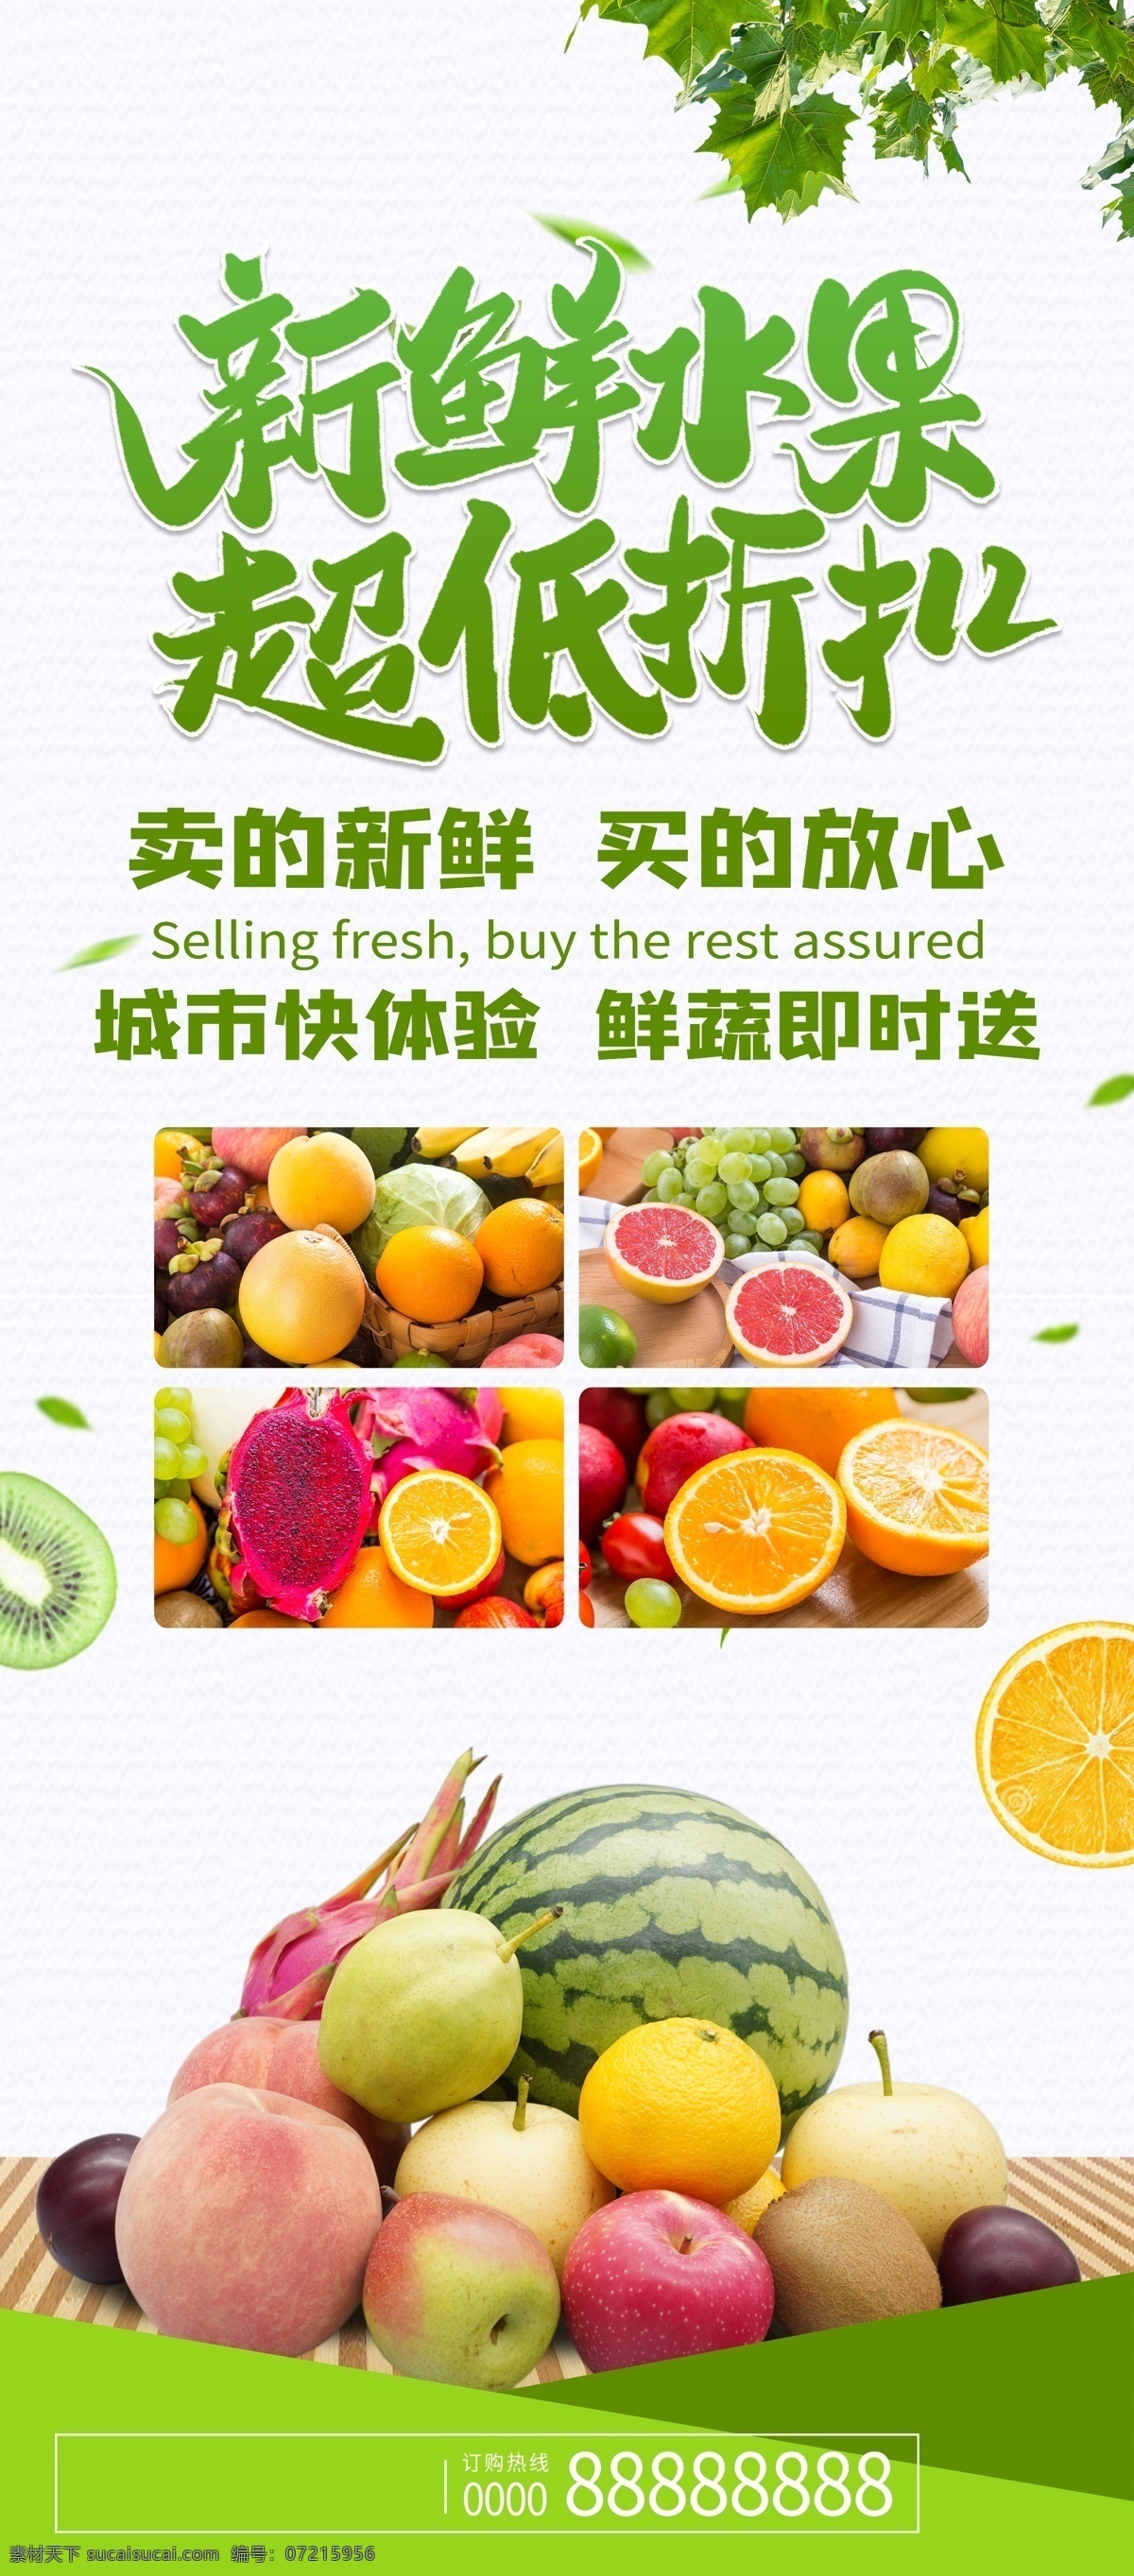 生鲜蔬菜 生鲜海报 生鲜 海报 平面设计 酷炫海报 高端 绿色食品 水果蔬菜